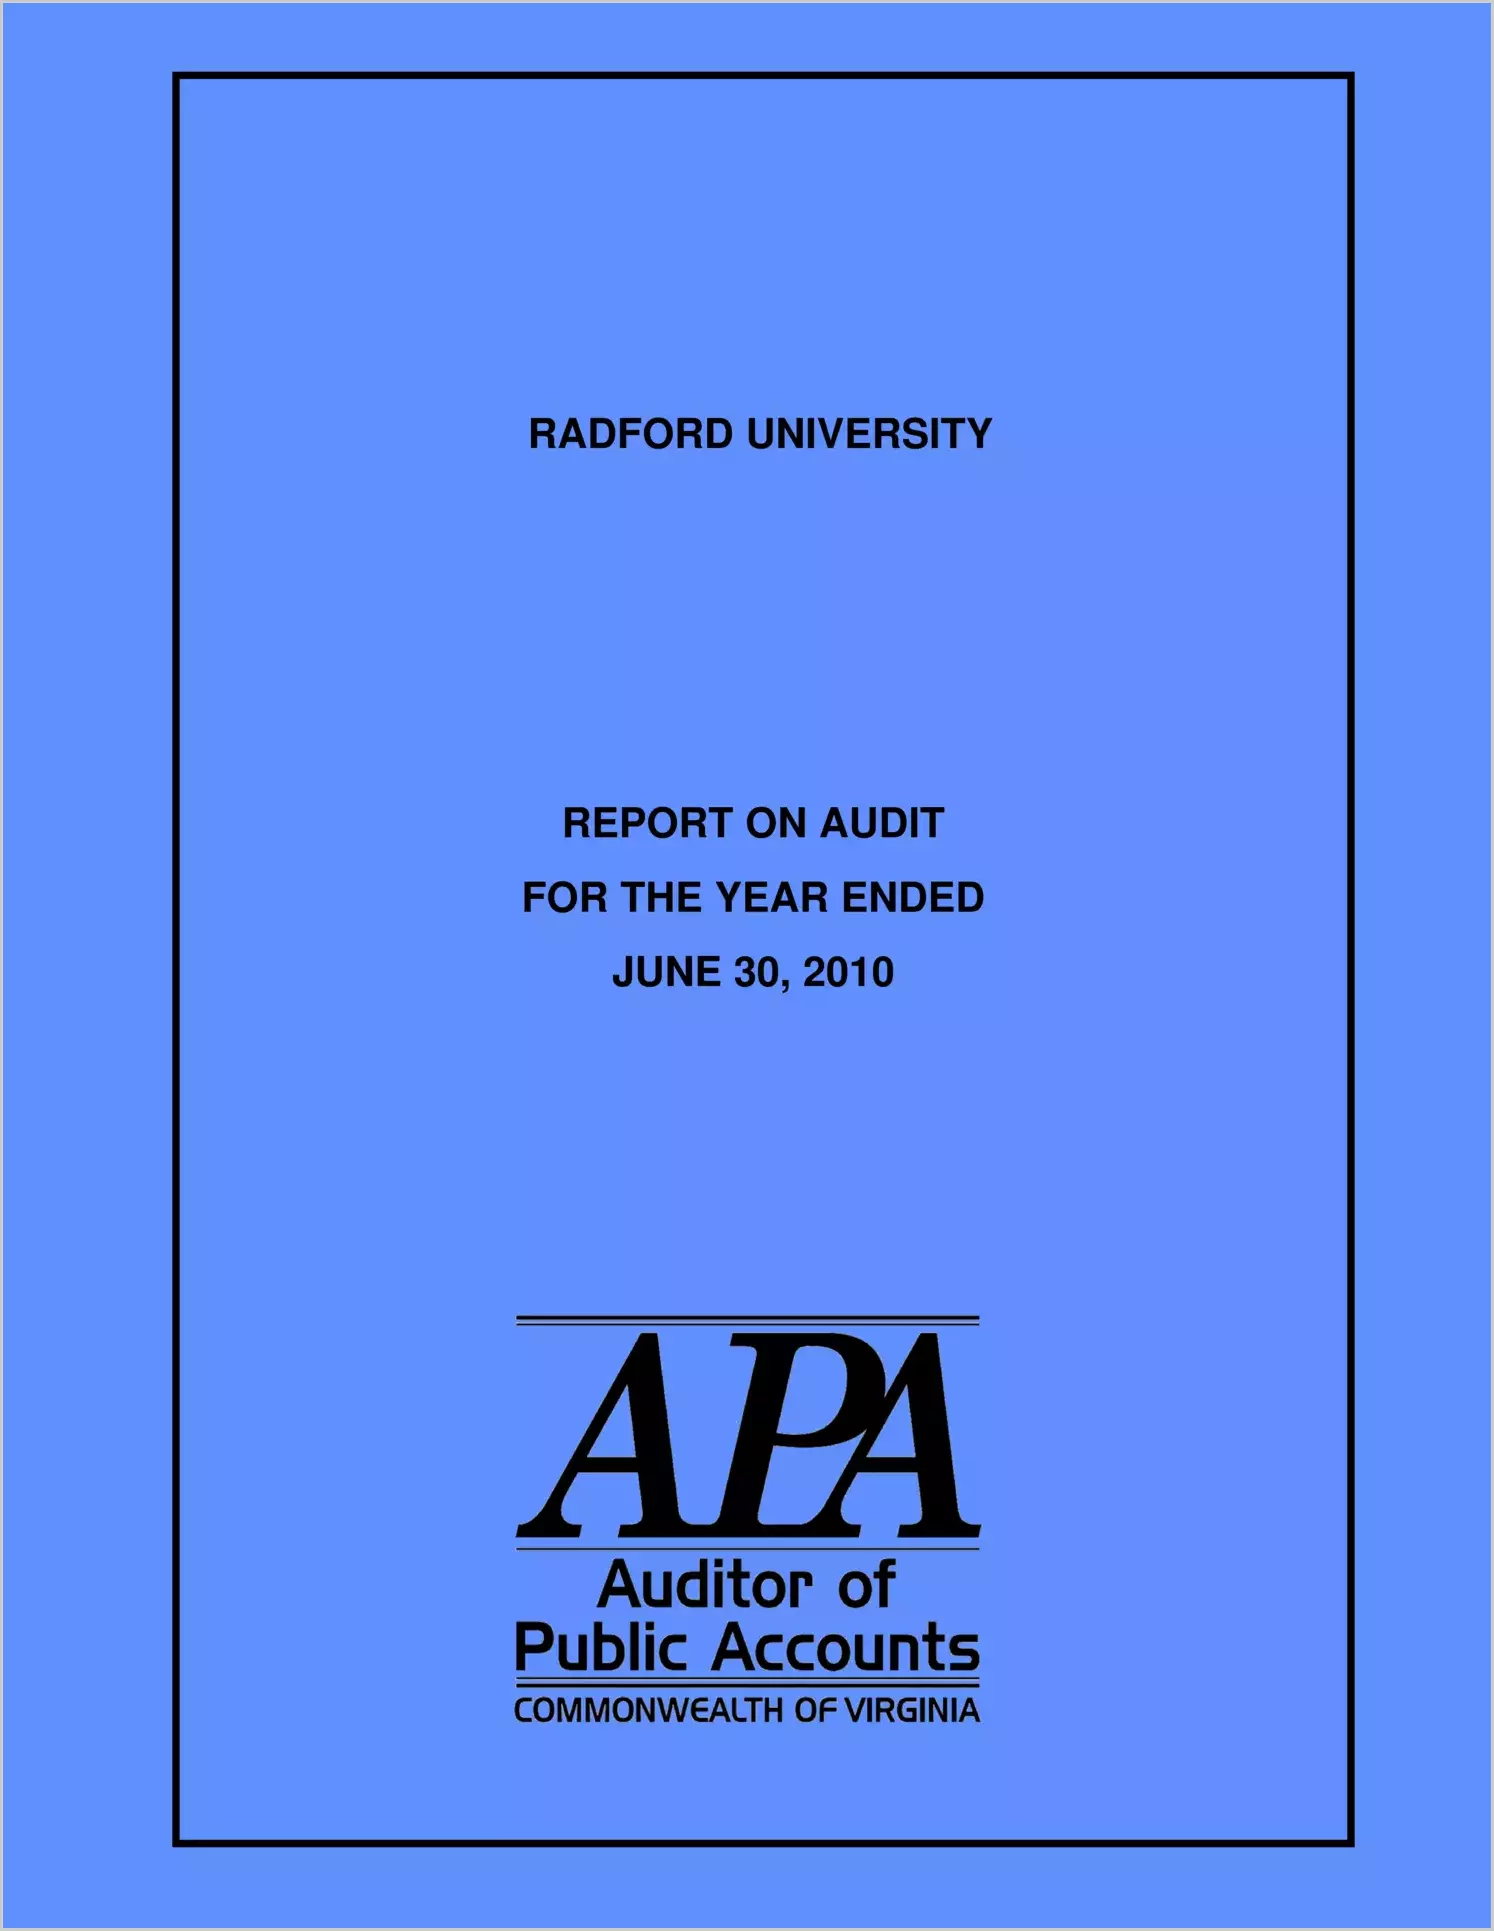 Radford University report on audit for year ending June 30, 2010